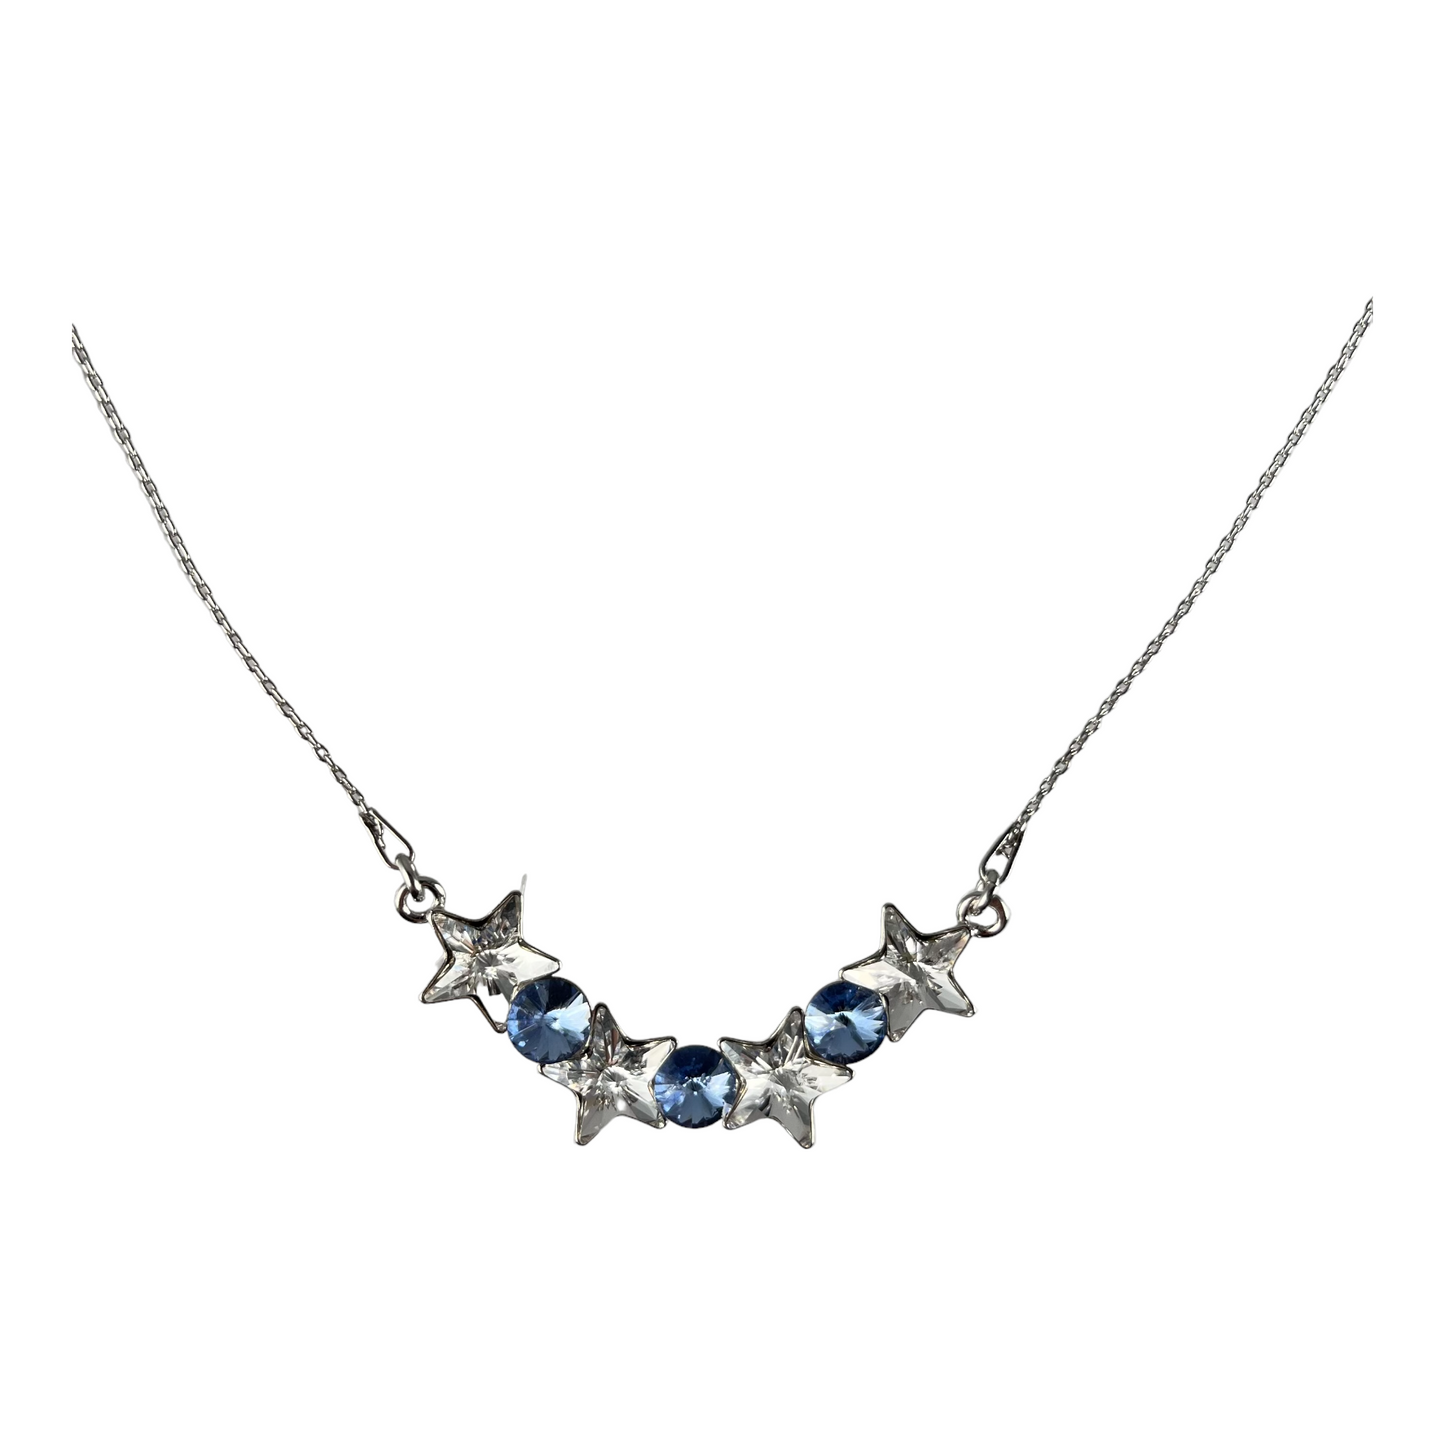 Collier avec cristaux Swarovski, collection SEVER, cristal/bleu, argent rhodié